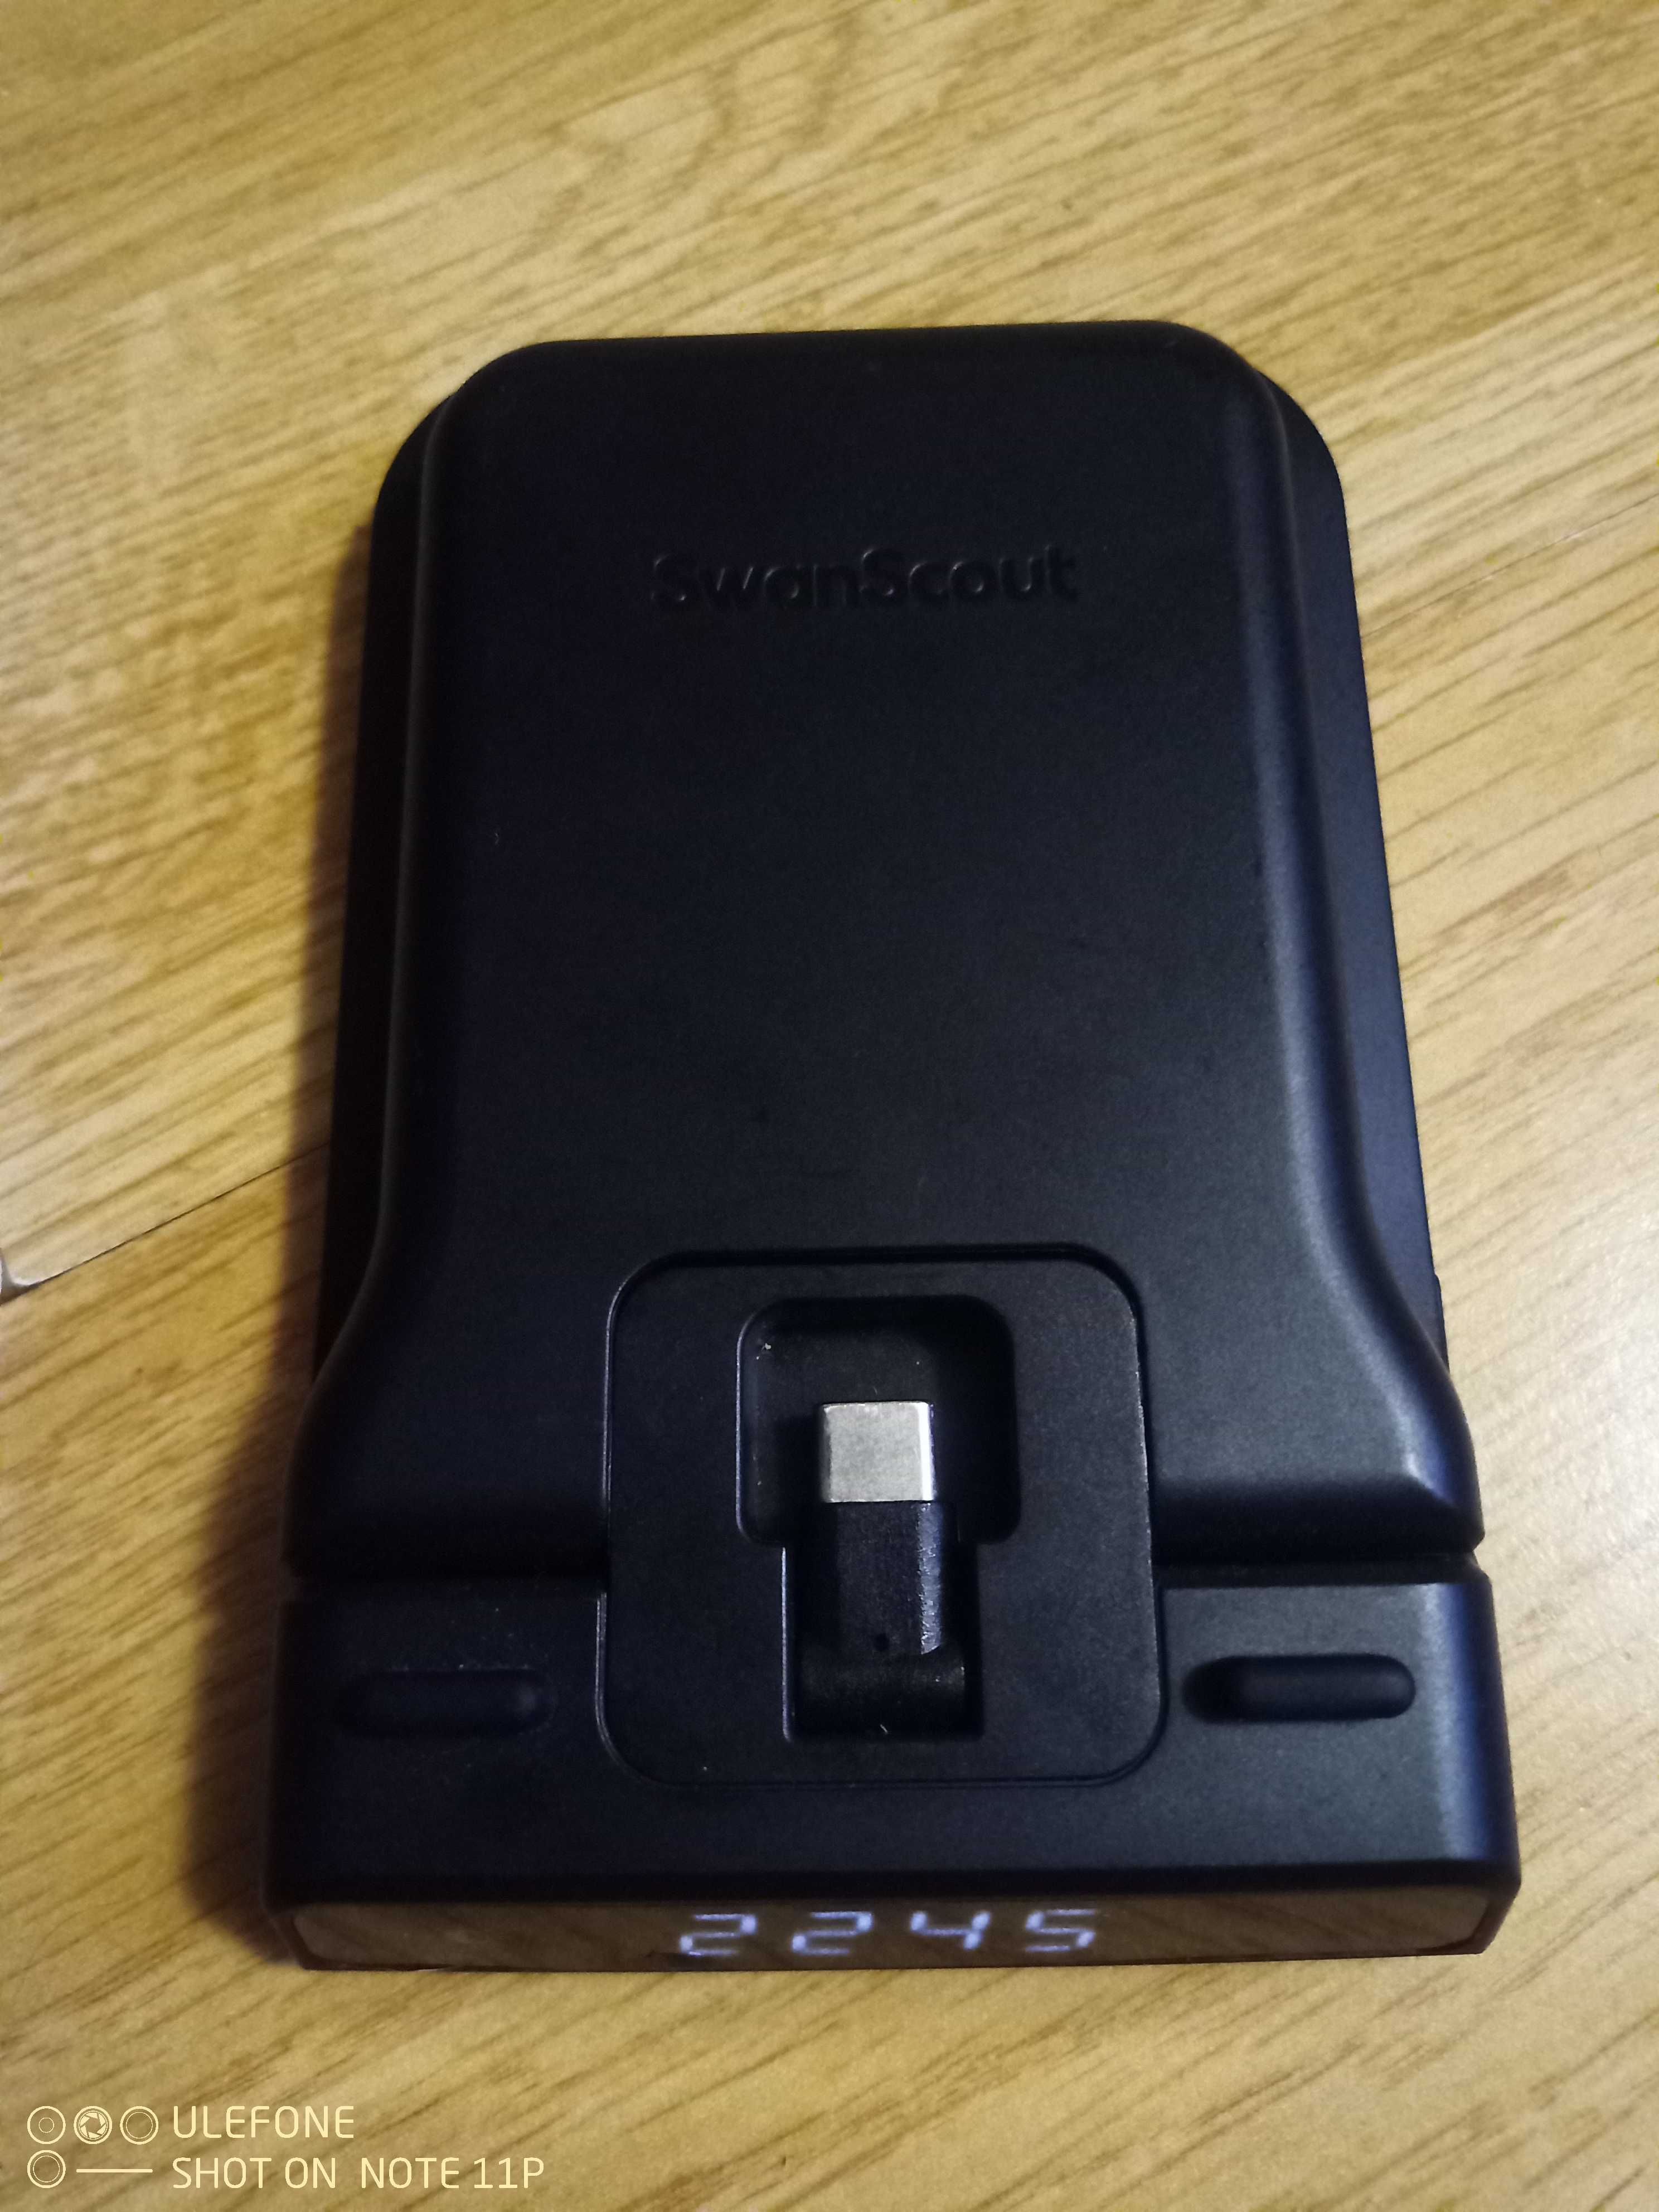 Telefoniczna stacja dokująca SwanScout S1001 ładowarka Google USB-C